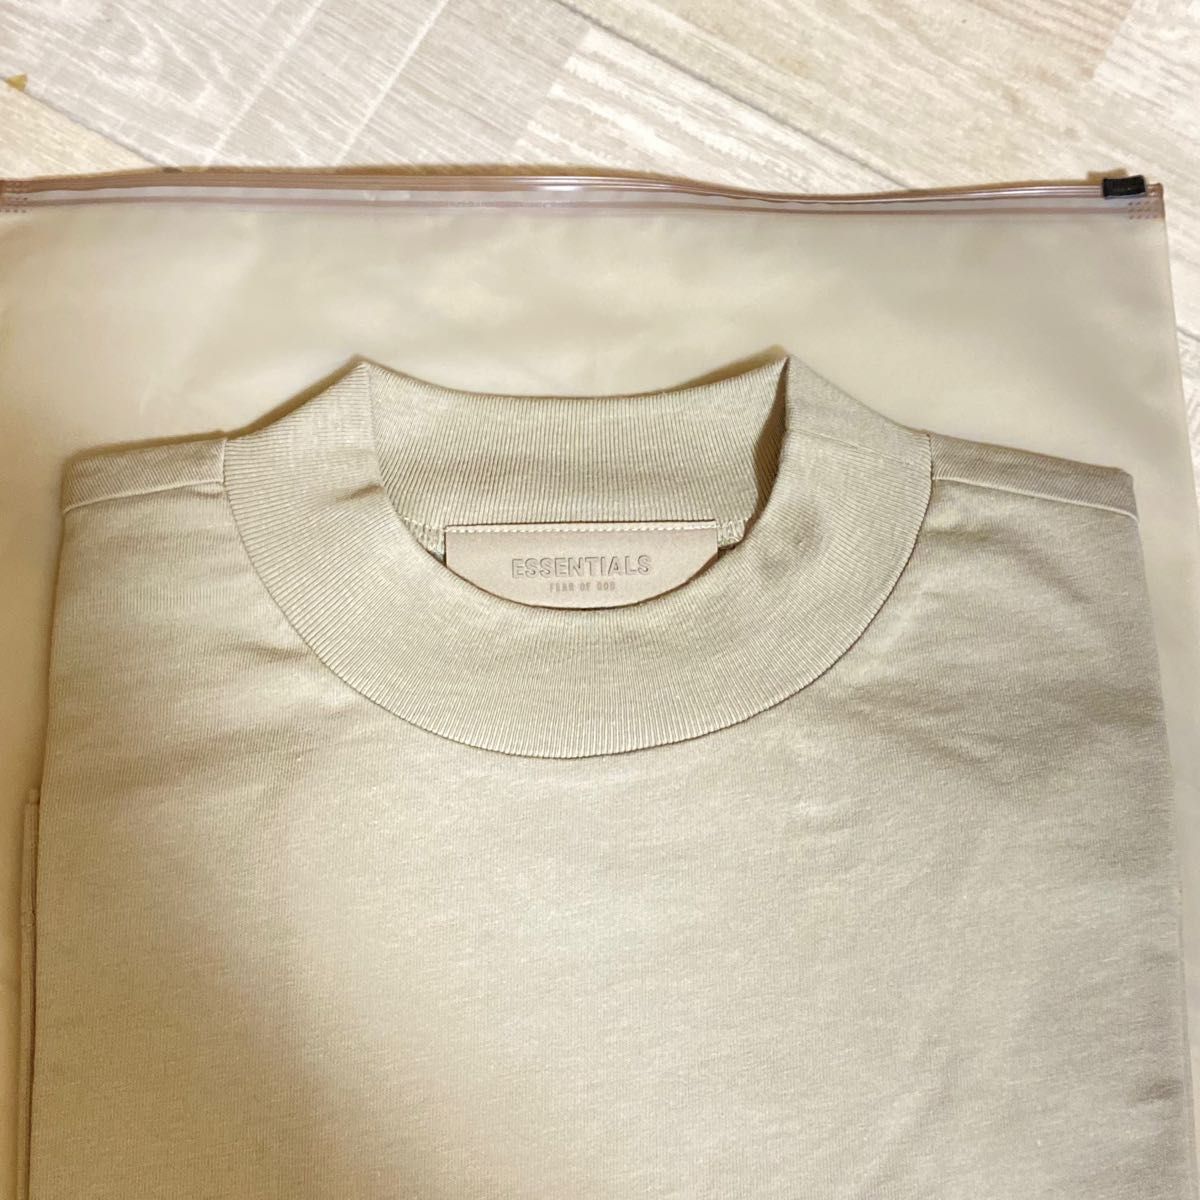 FOG エッセンシャルズ Tシャツ グレー L ラバー ロゴ 半袖Tシャツ ロゴTシャツ フィアオブゴッド essentials